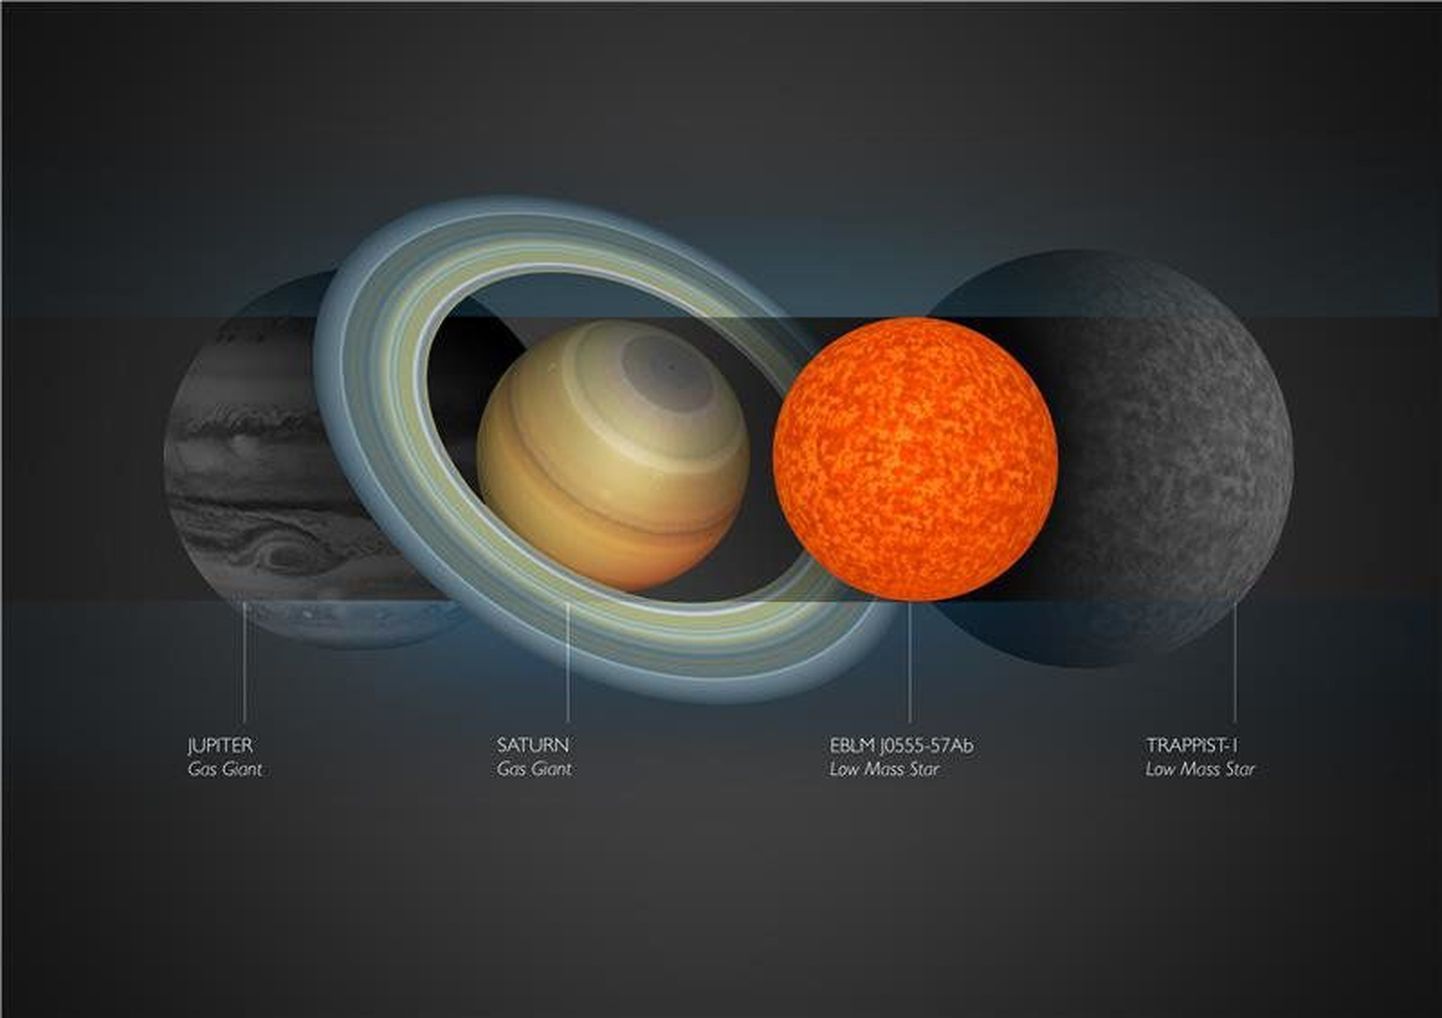 EBLM J0555-57Ab võrdluses Jupiteri, Saturni ja TRAPPIST-1ga.